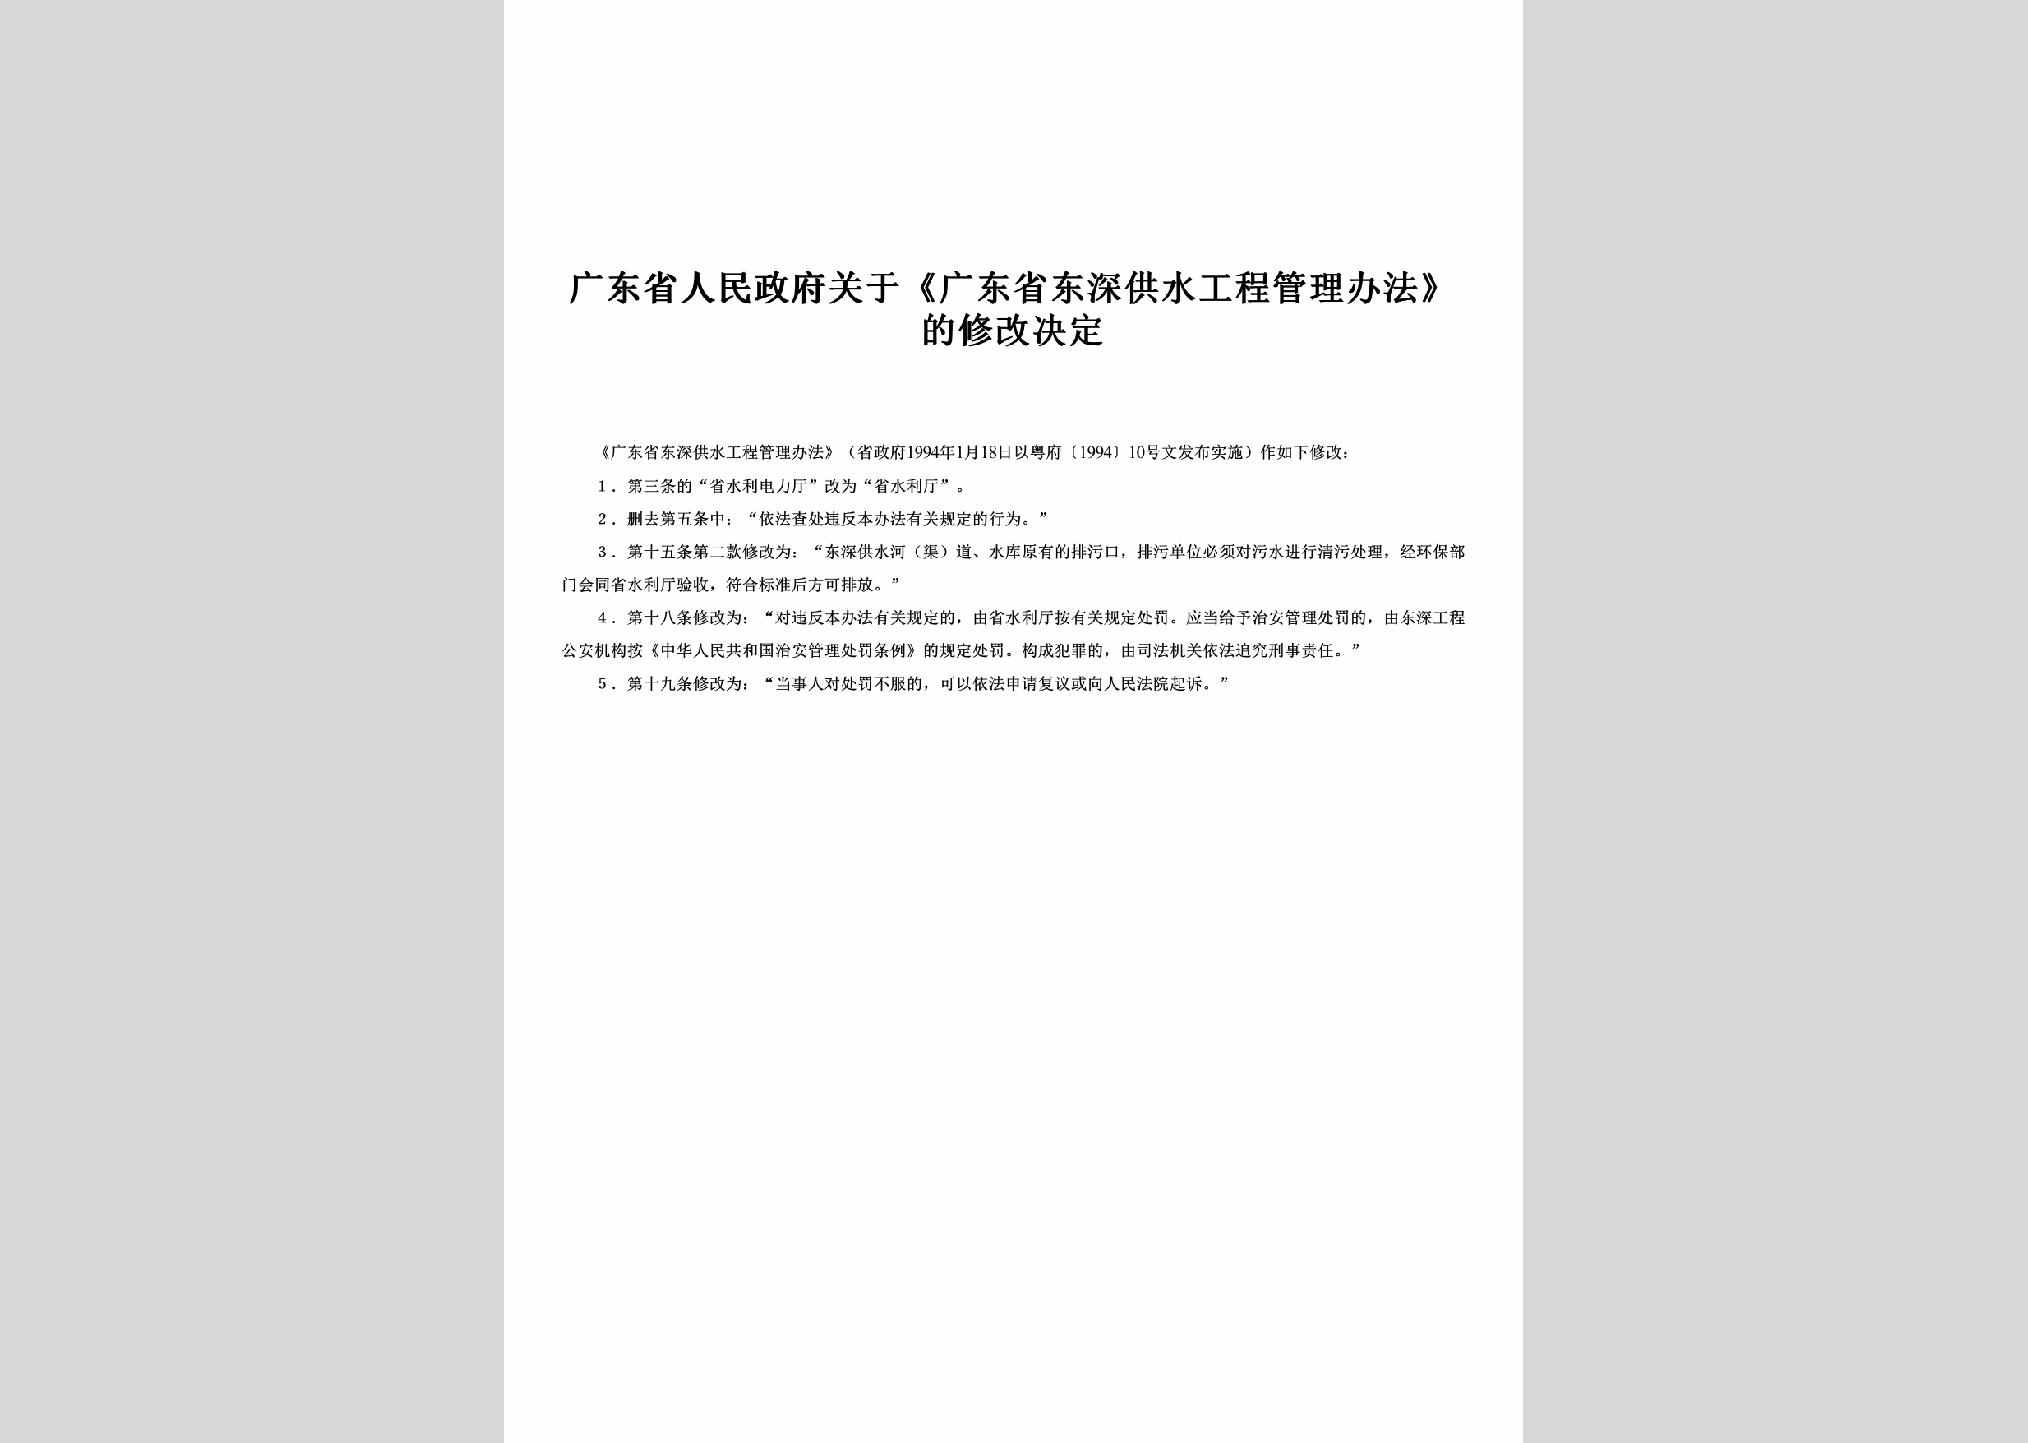 粤府[1994]10号：关于《广东省东深供水工程管理办法》的修改决定